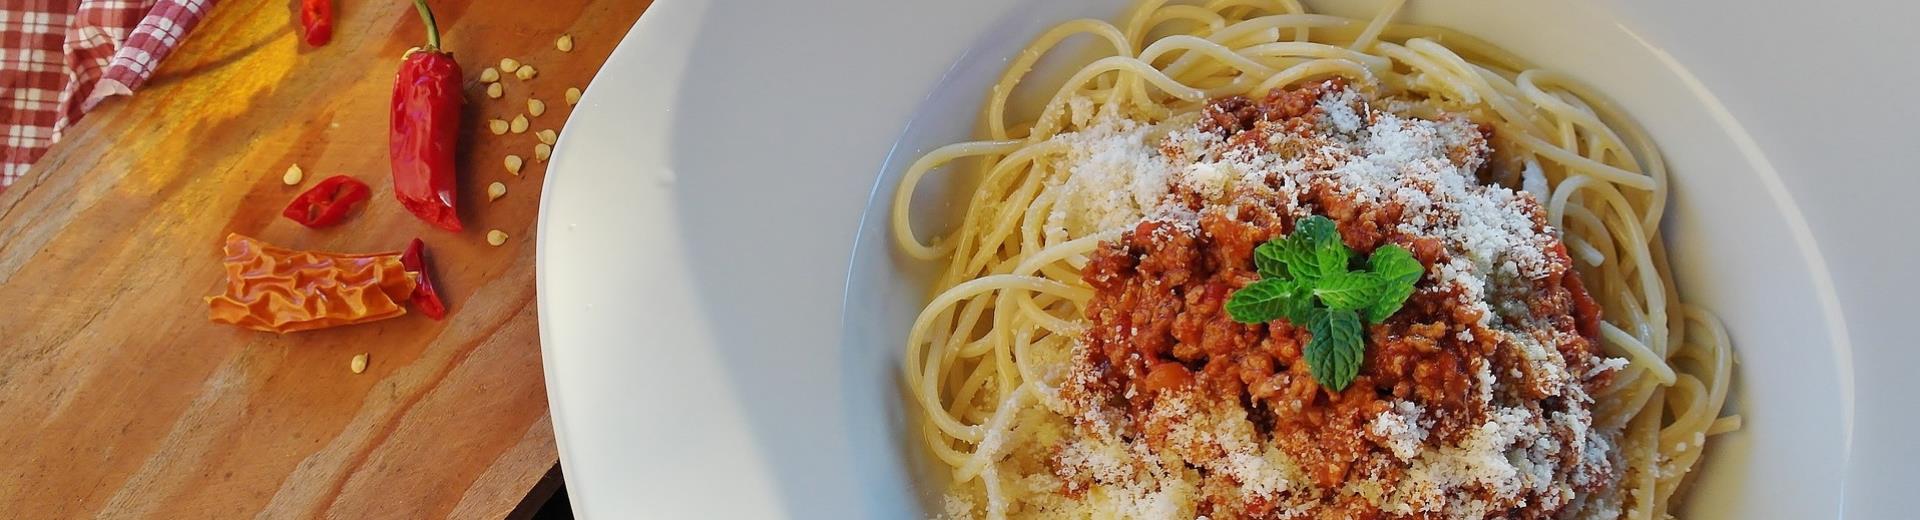 Scopri le specialità gastronomiche di bologna con L'Hotel San Donato 4 stelle